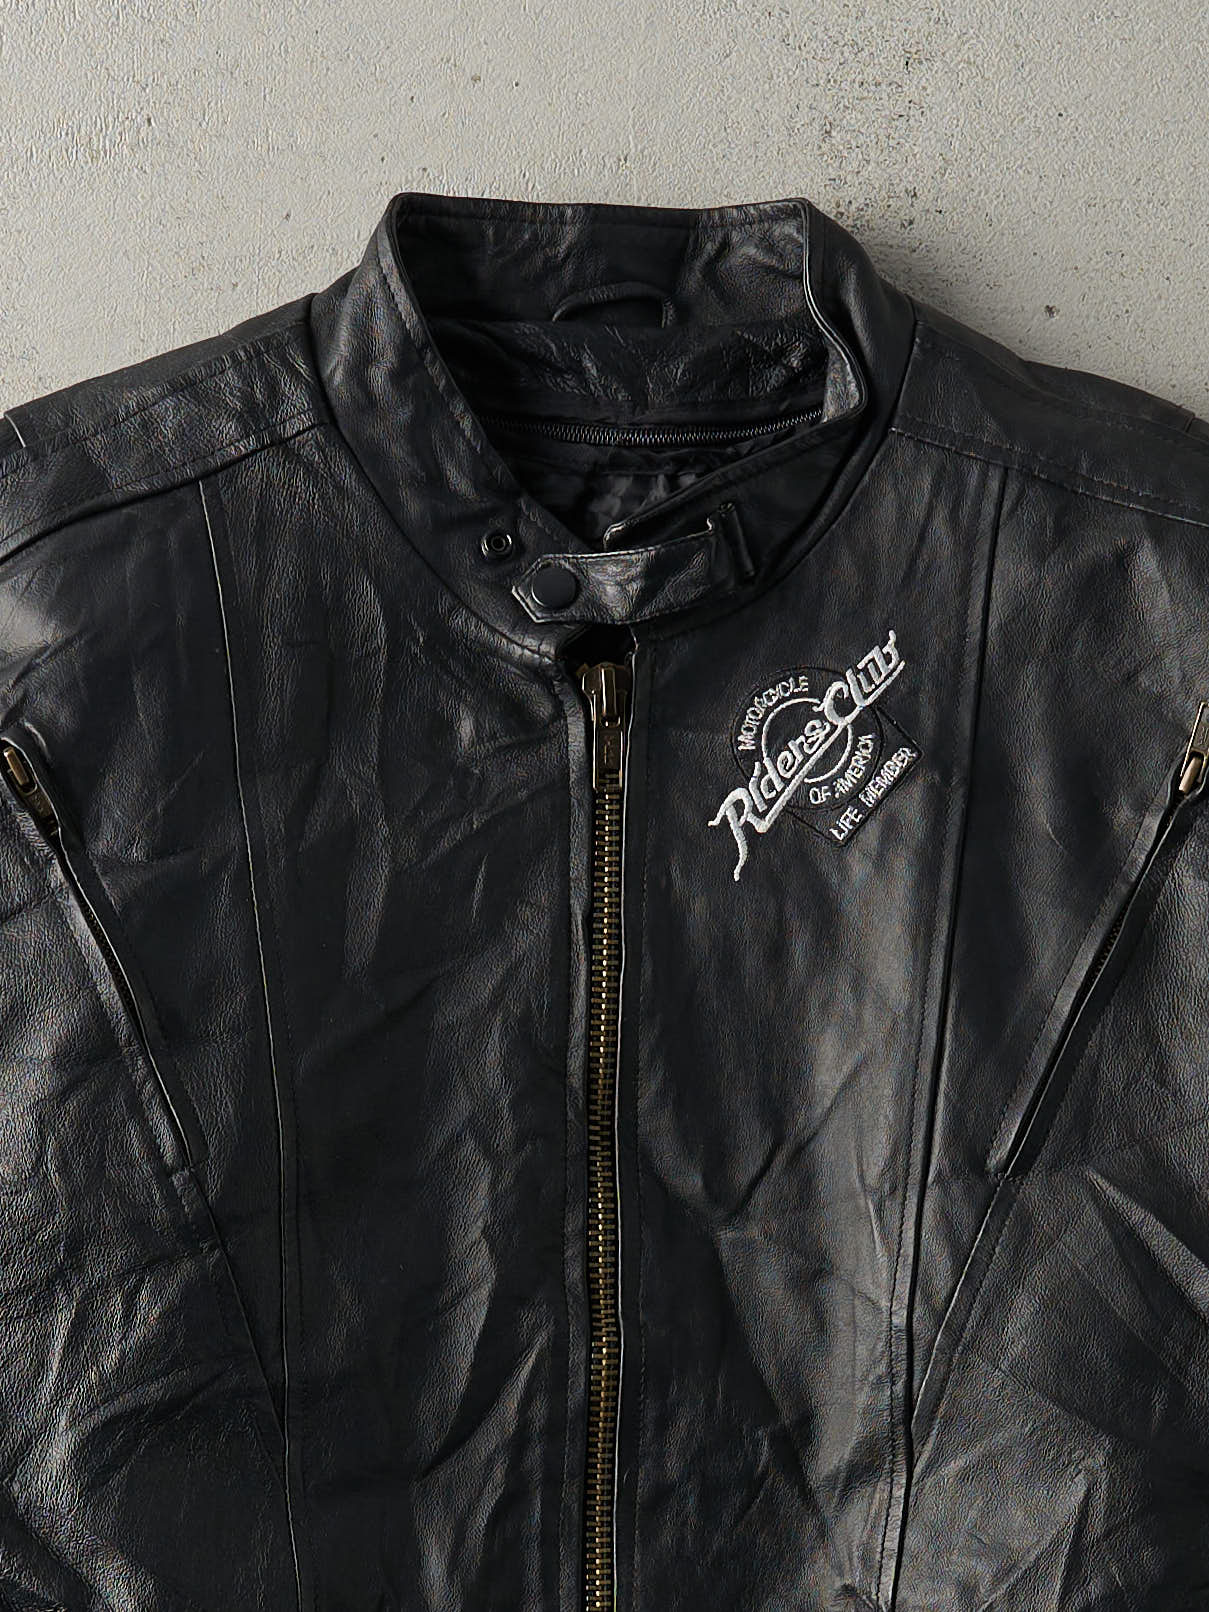 Vintage Y2K Black Riders Club Lifetime Member Leather Biker Jacket (L)